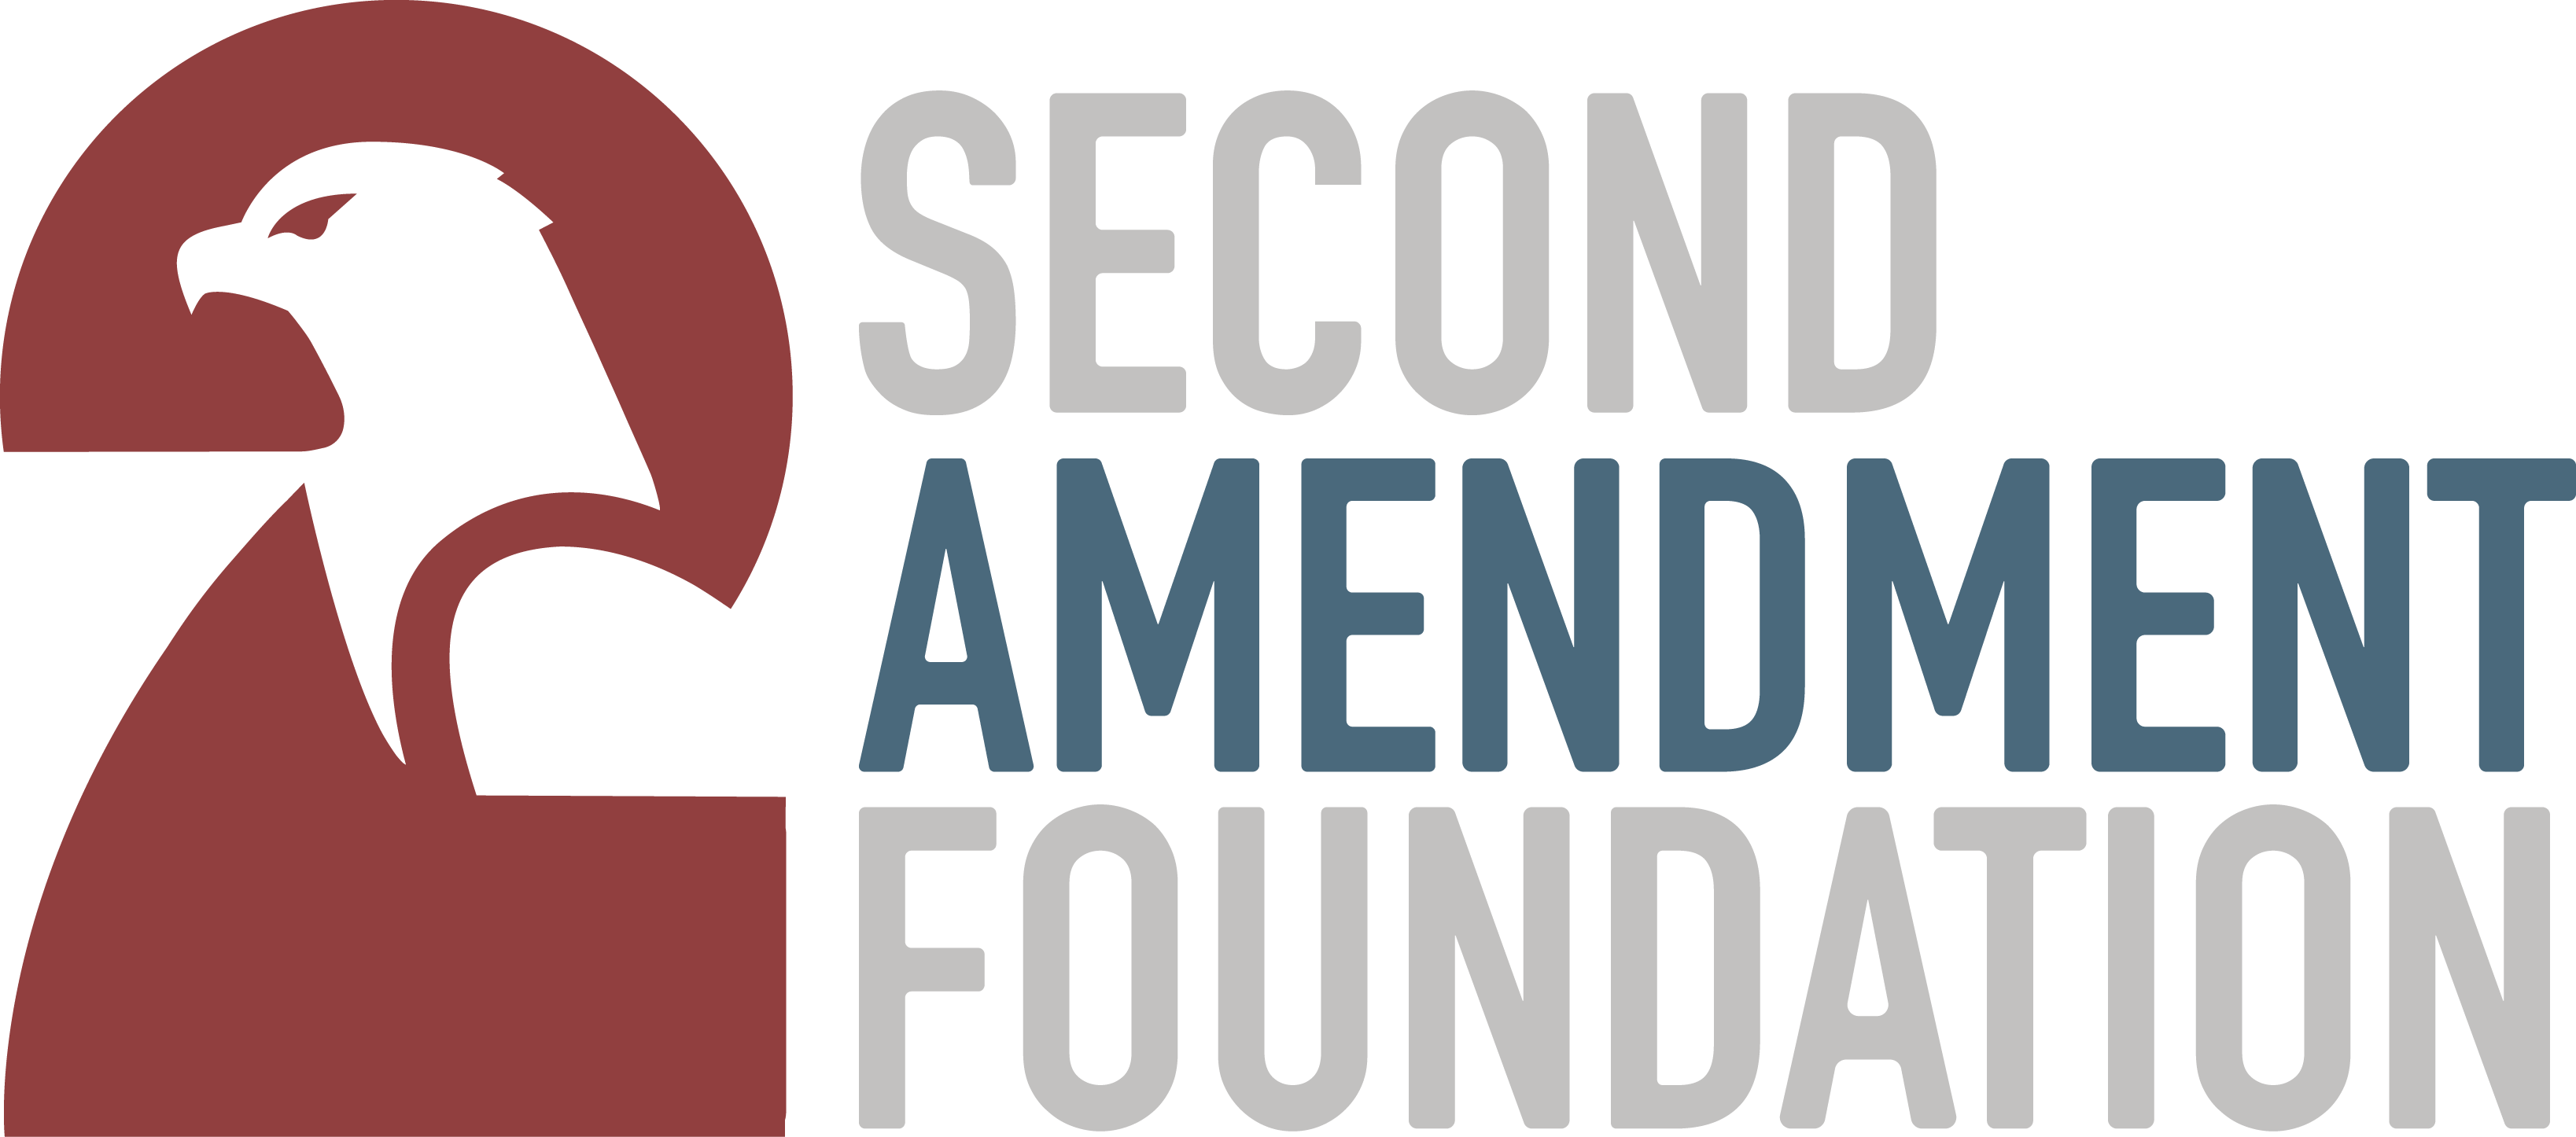 Second Amendment Foundation logo